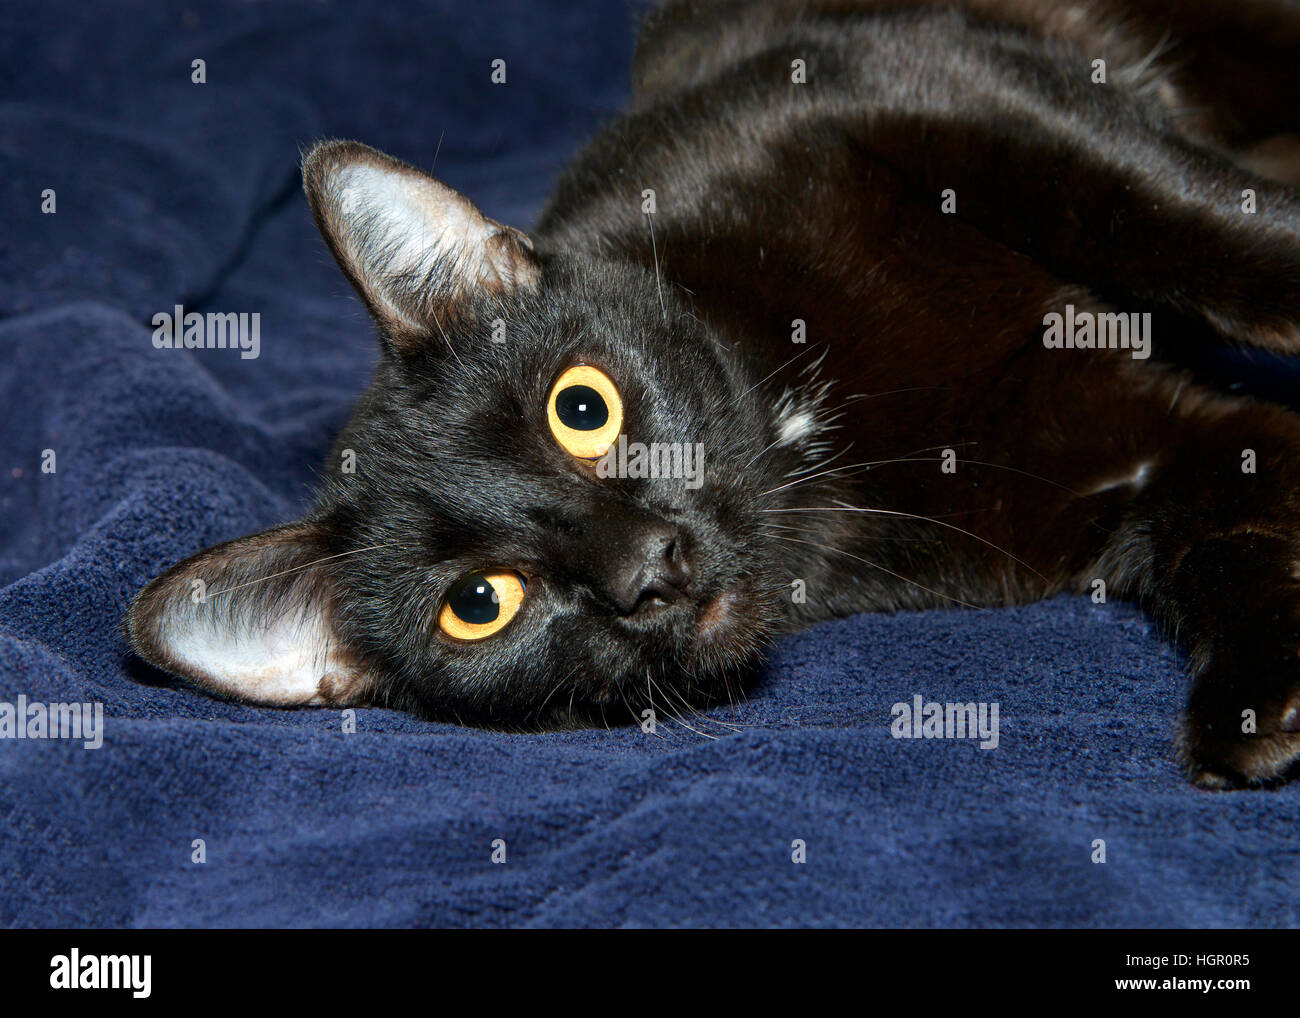 Porträt einer schwarzen Katze mit gelben Augen Verlegung seitlich auf einer dunklen blauen Decke Blick sehnsüchtig auf Betrachter. Stockfoto